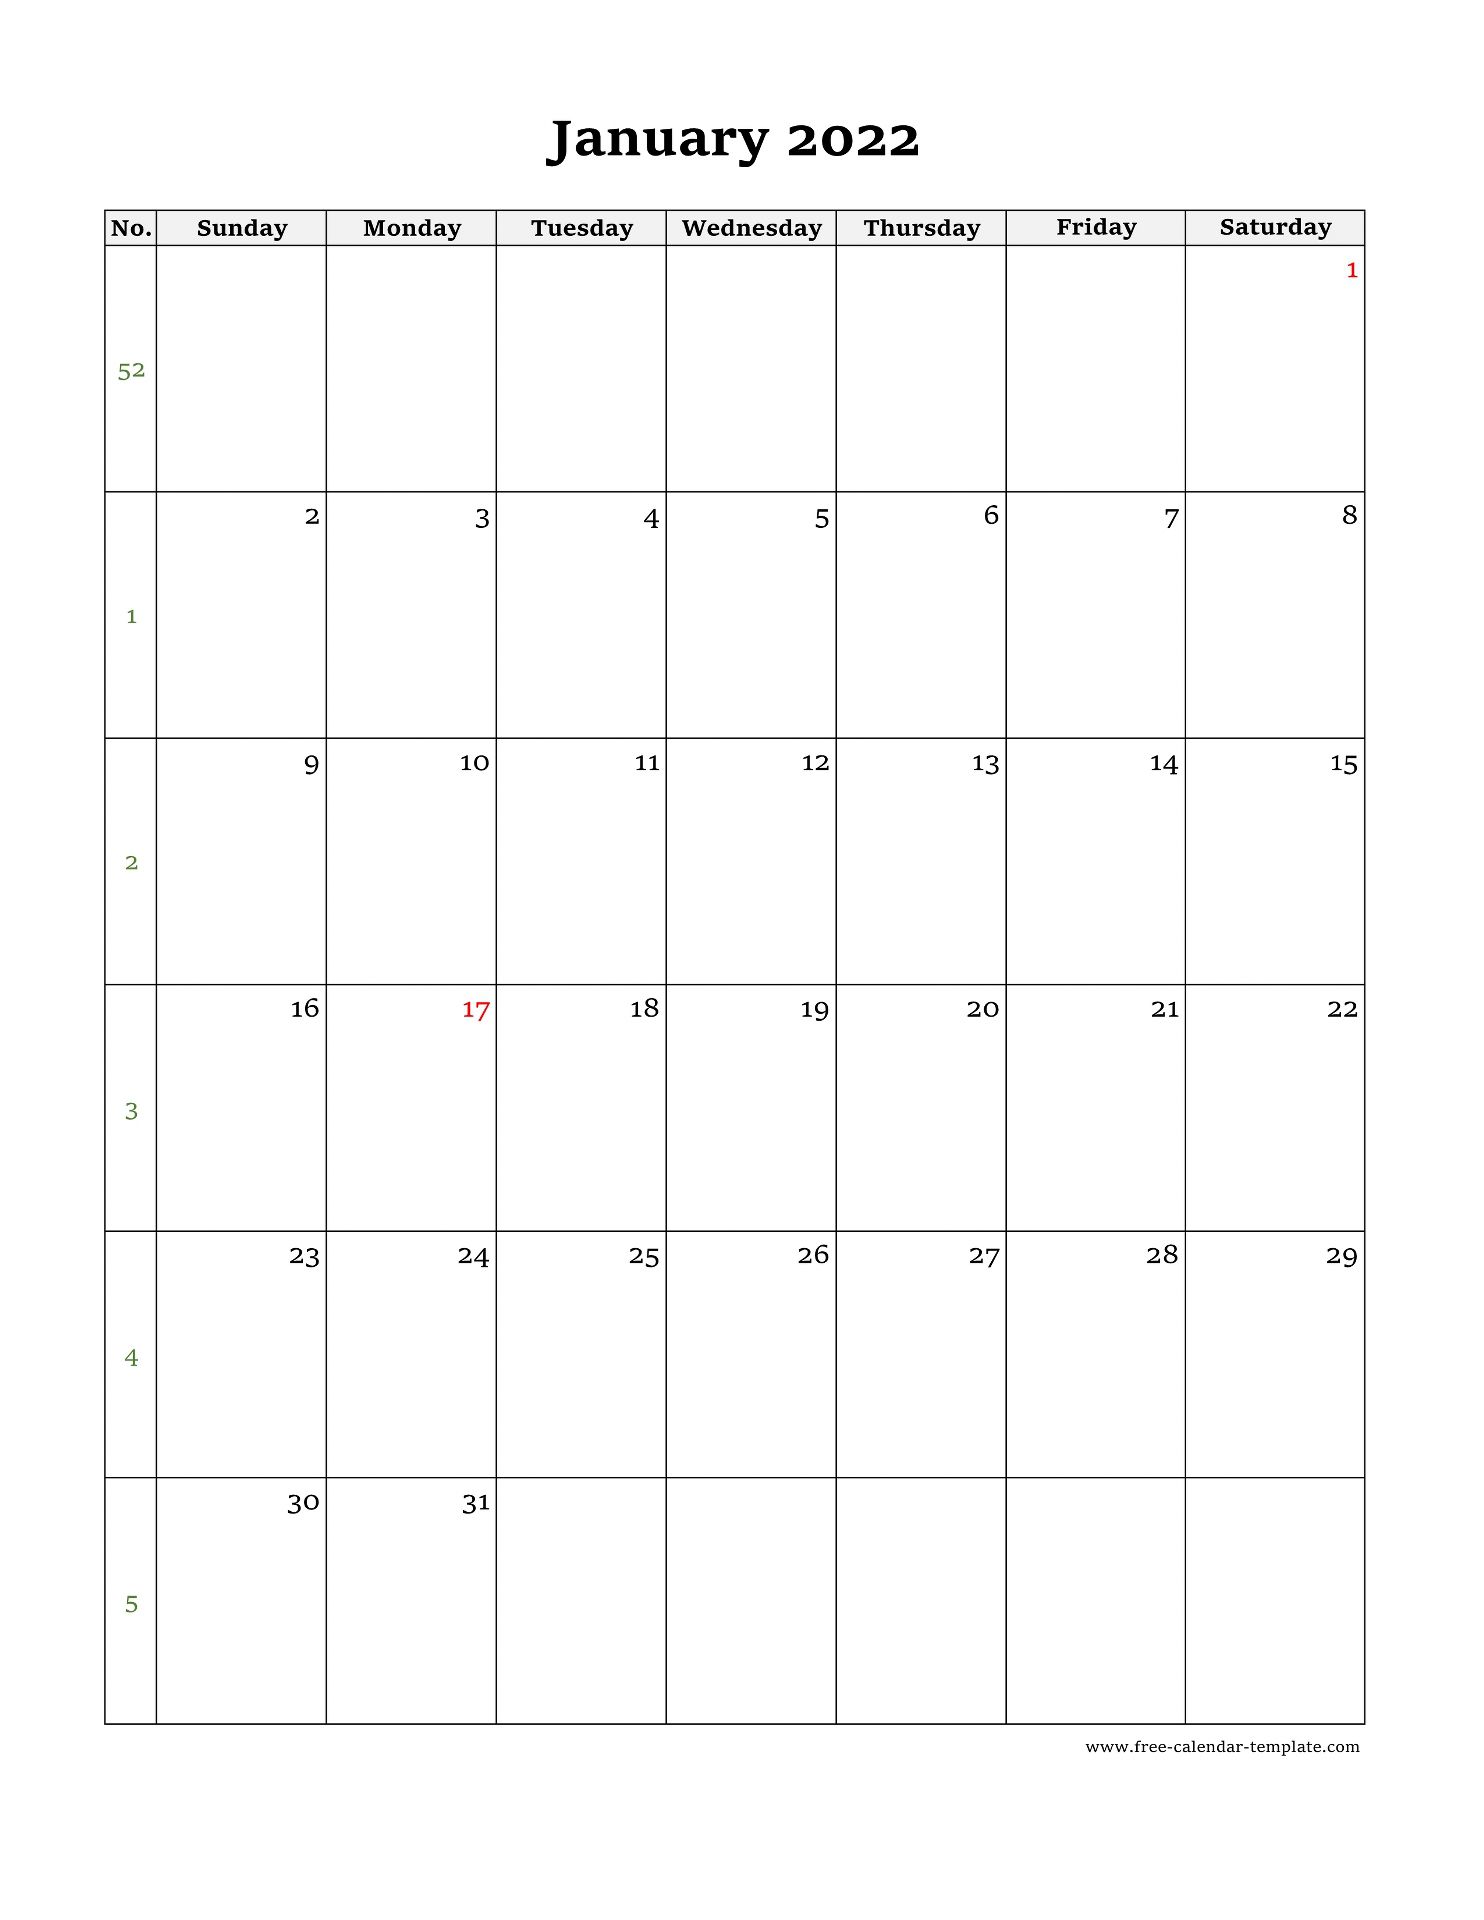 2023-calendar-monthly-free-get-calendar-2023-update